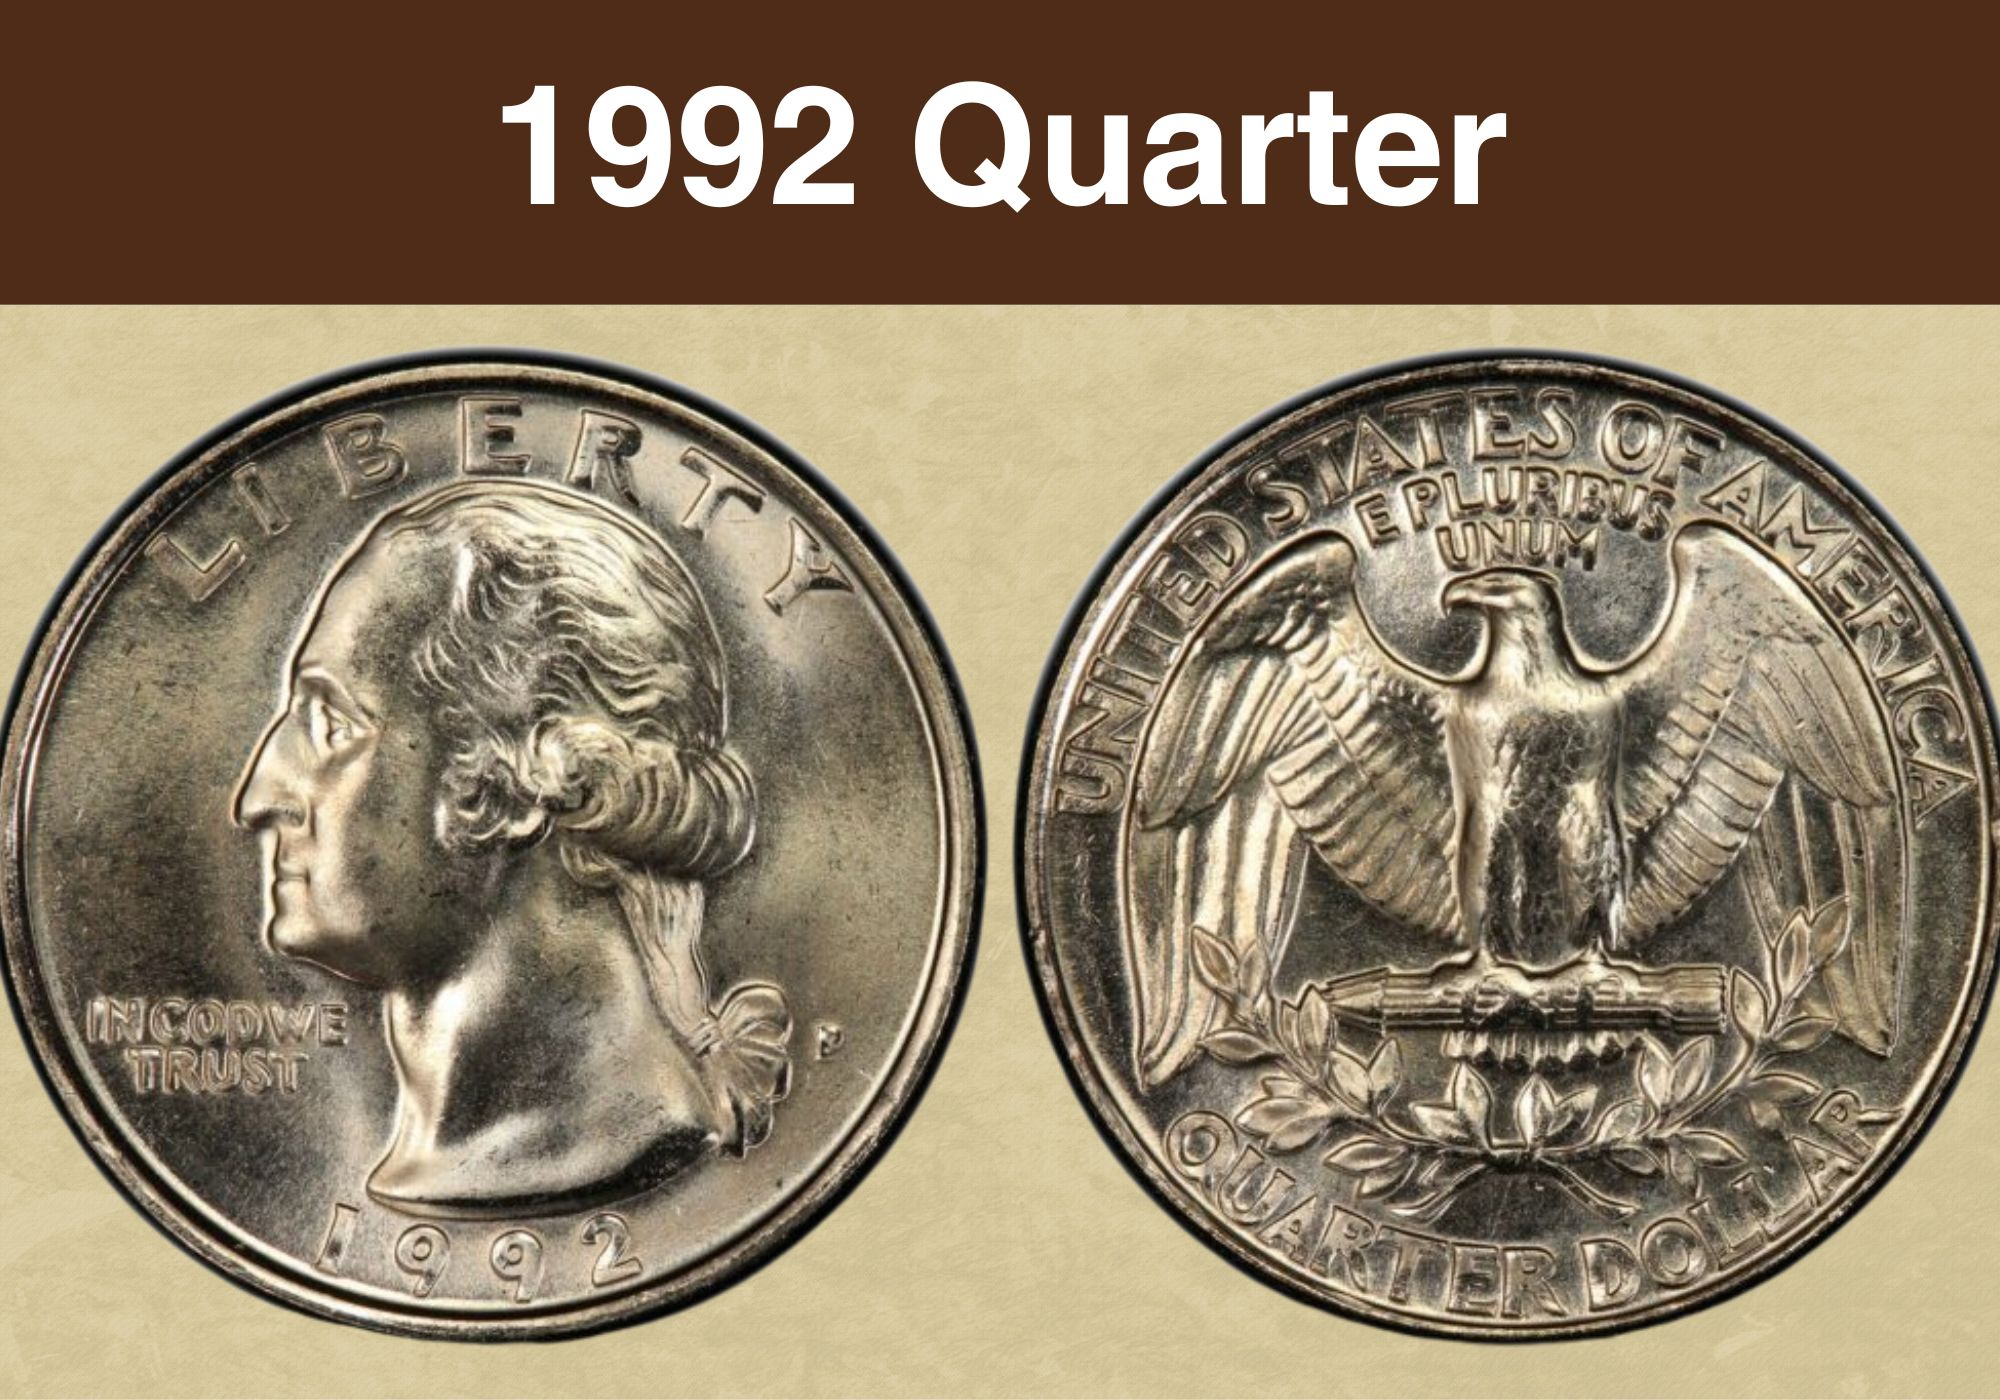 1992 Quarter Value